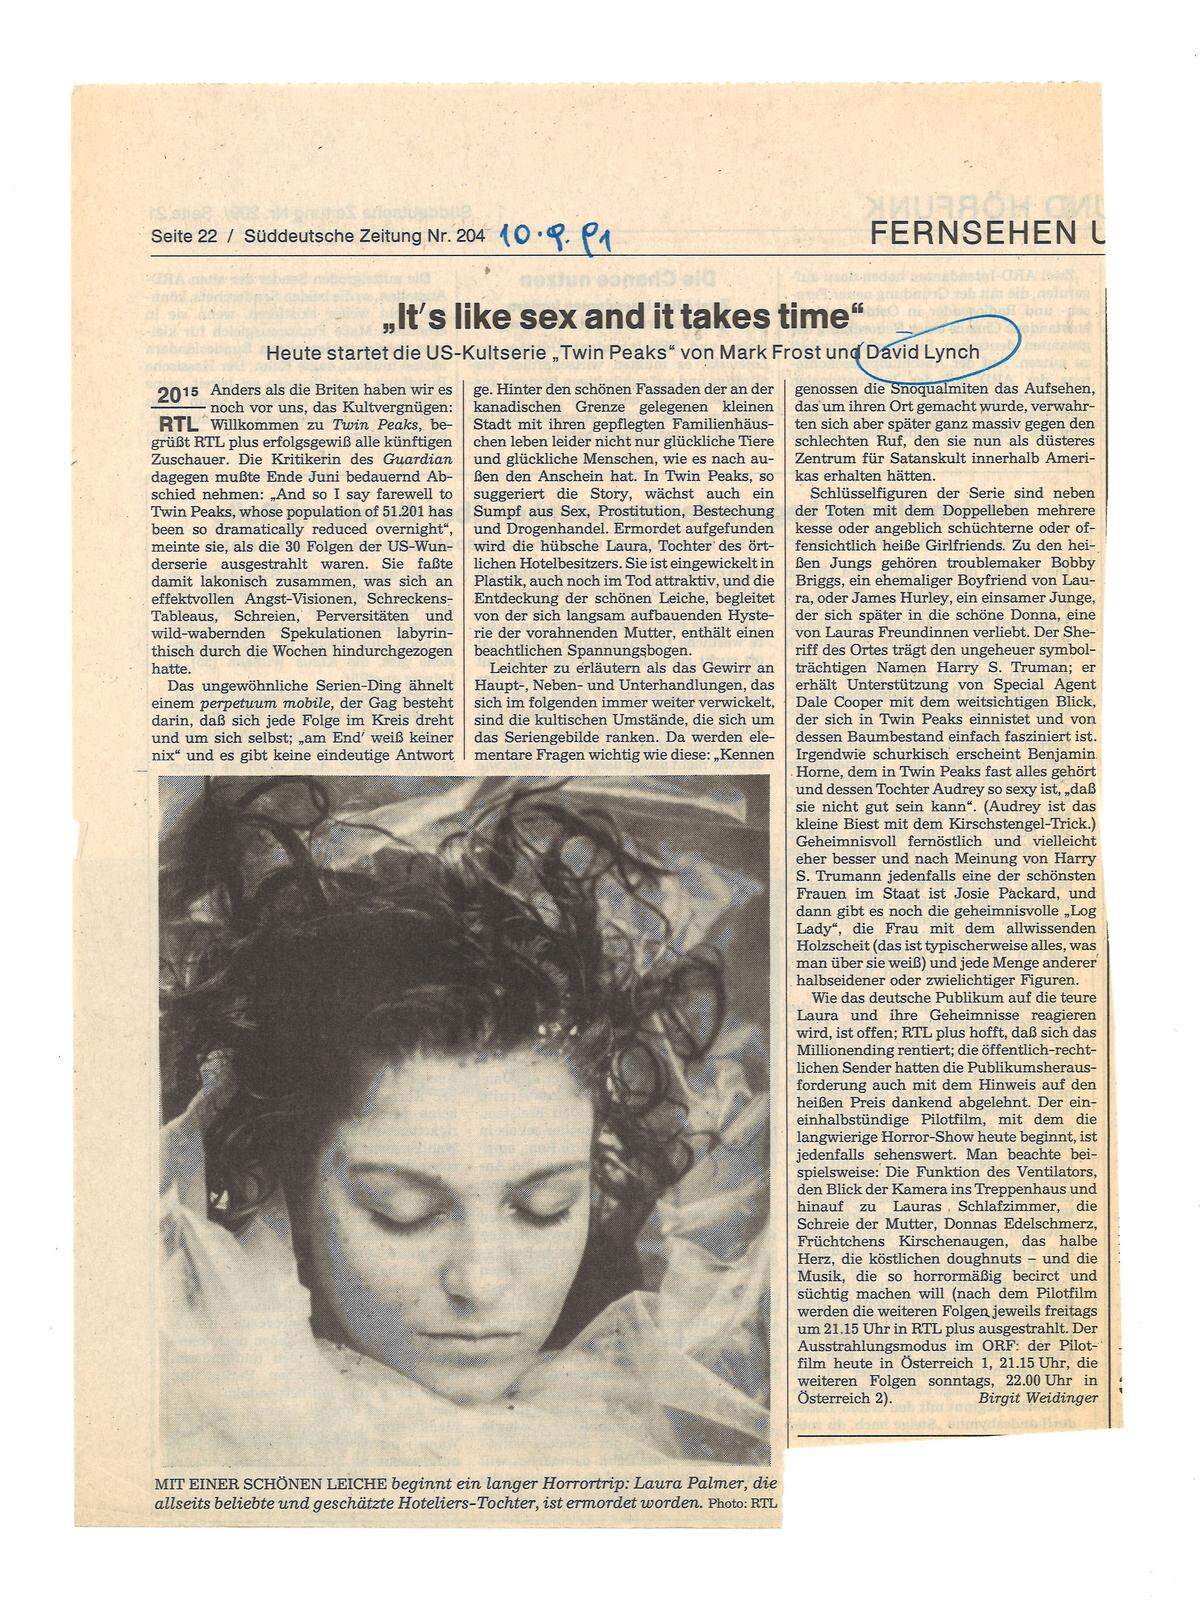 Die "Süddeutsche Zeitung" stimmte ihre Leser am 10. September 1991 mit einem englischen Titel und viel Vorfreude auf den Fernsehabend ein: "Anders als die Briten haben wir es noch vor uns, das Kultvergnügen." Redakteurin Birgit Weidinger schrieb: "Das ungewöhnliche Serien-Ding ähnelt einem Perpetuum mobile, der Gag besteht darin, dass sich jede Folge im Kreis dreht." Und später: "Wie das deutsche Publikum auf die teure Laura und ihre Geheimnisse reagieren wird, ist offen; RTL plus hofft, dass sich das Millionending rentiert; die öffentlich-rechtlichen Sender hatten die Publikumsherausforderung auch mit dem Hinweis auf den heißen Preis dankend abgelehnt." Der öffentlich-rechtliche ORF in Österreich hatte nicht abgelehnt. Und Privatsender gab es in Österreich damals noch lange nicht.